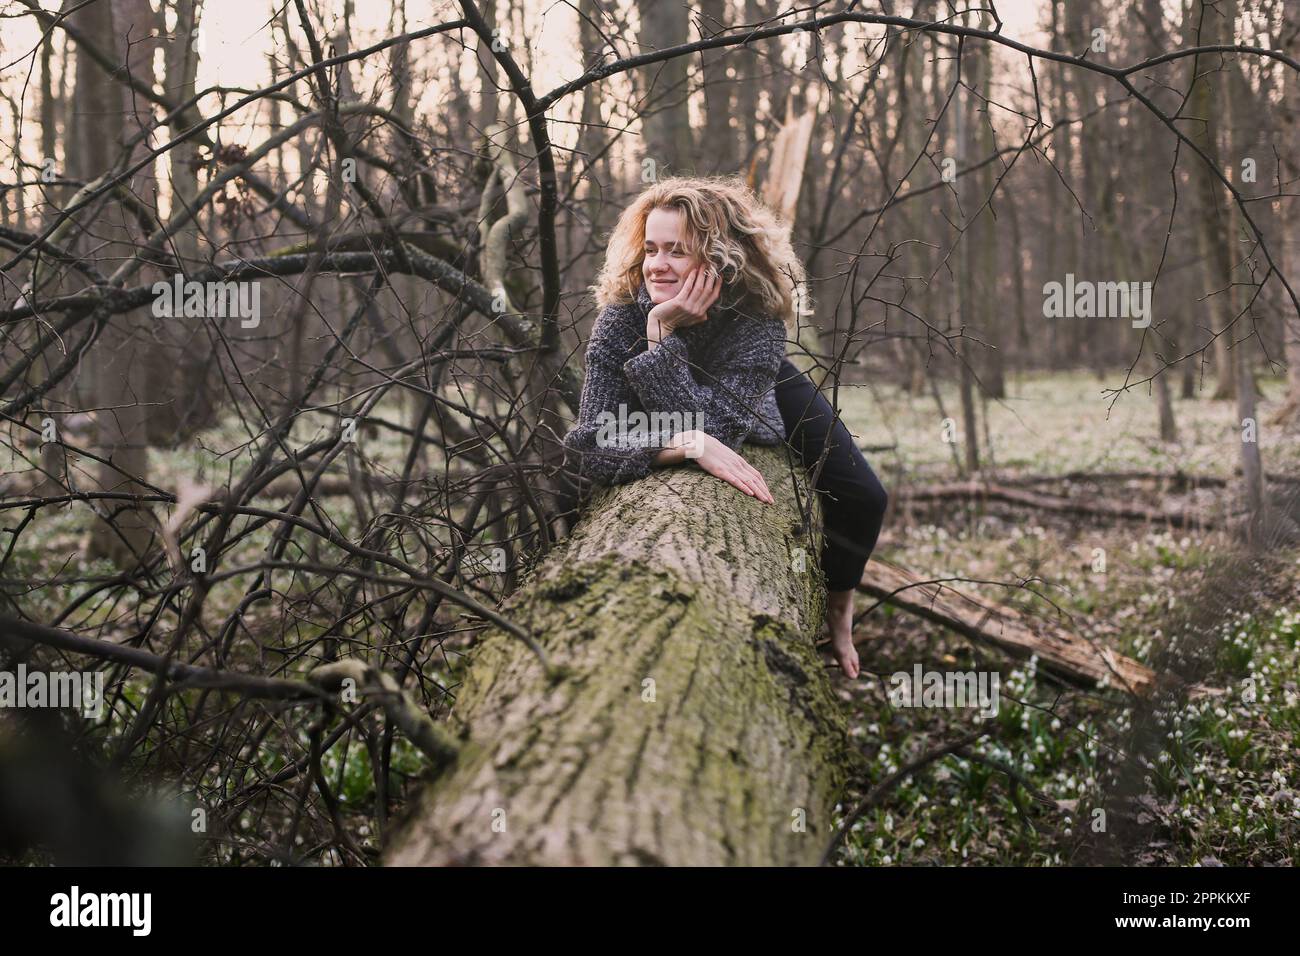 Eine lockige Frau, die sich auf dem Baumstamm ausruht, fotografiert Stockfoto